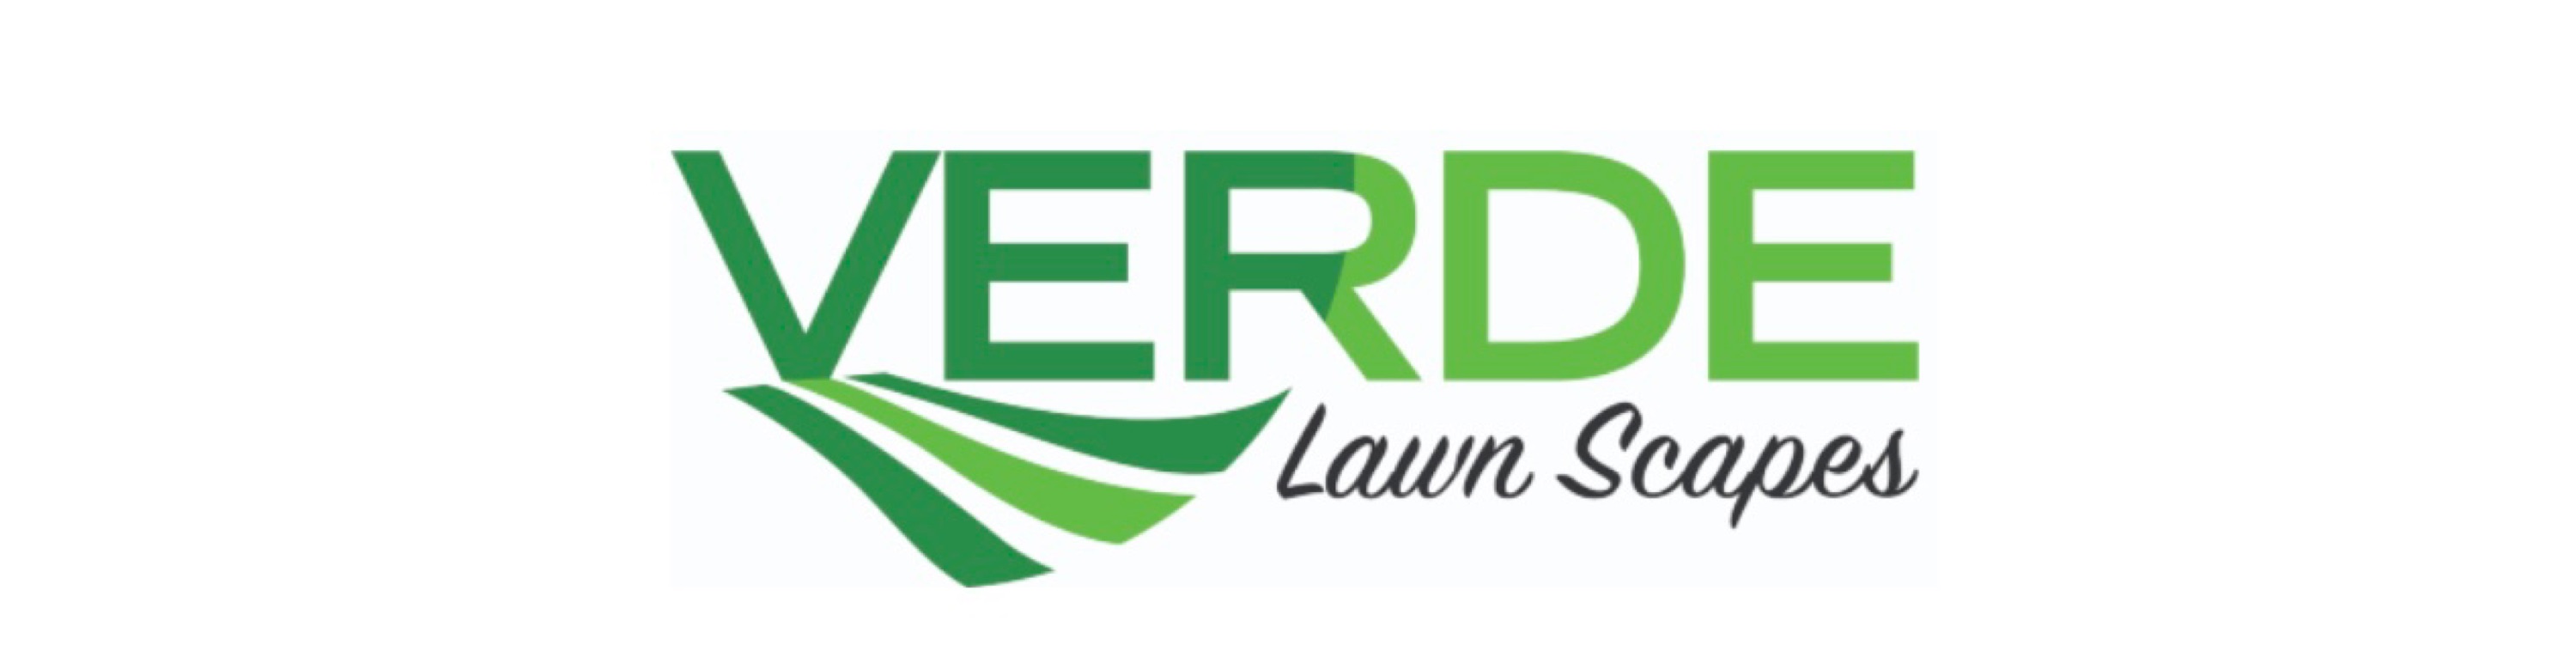 Verde Lawn Scapes Logo